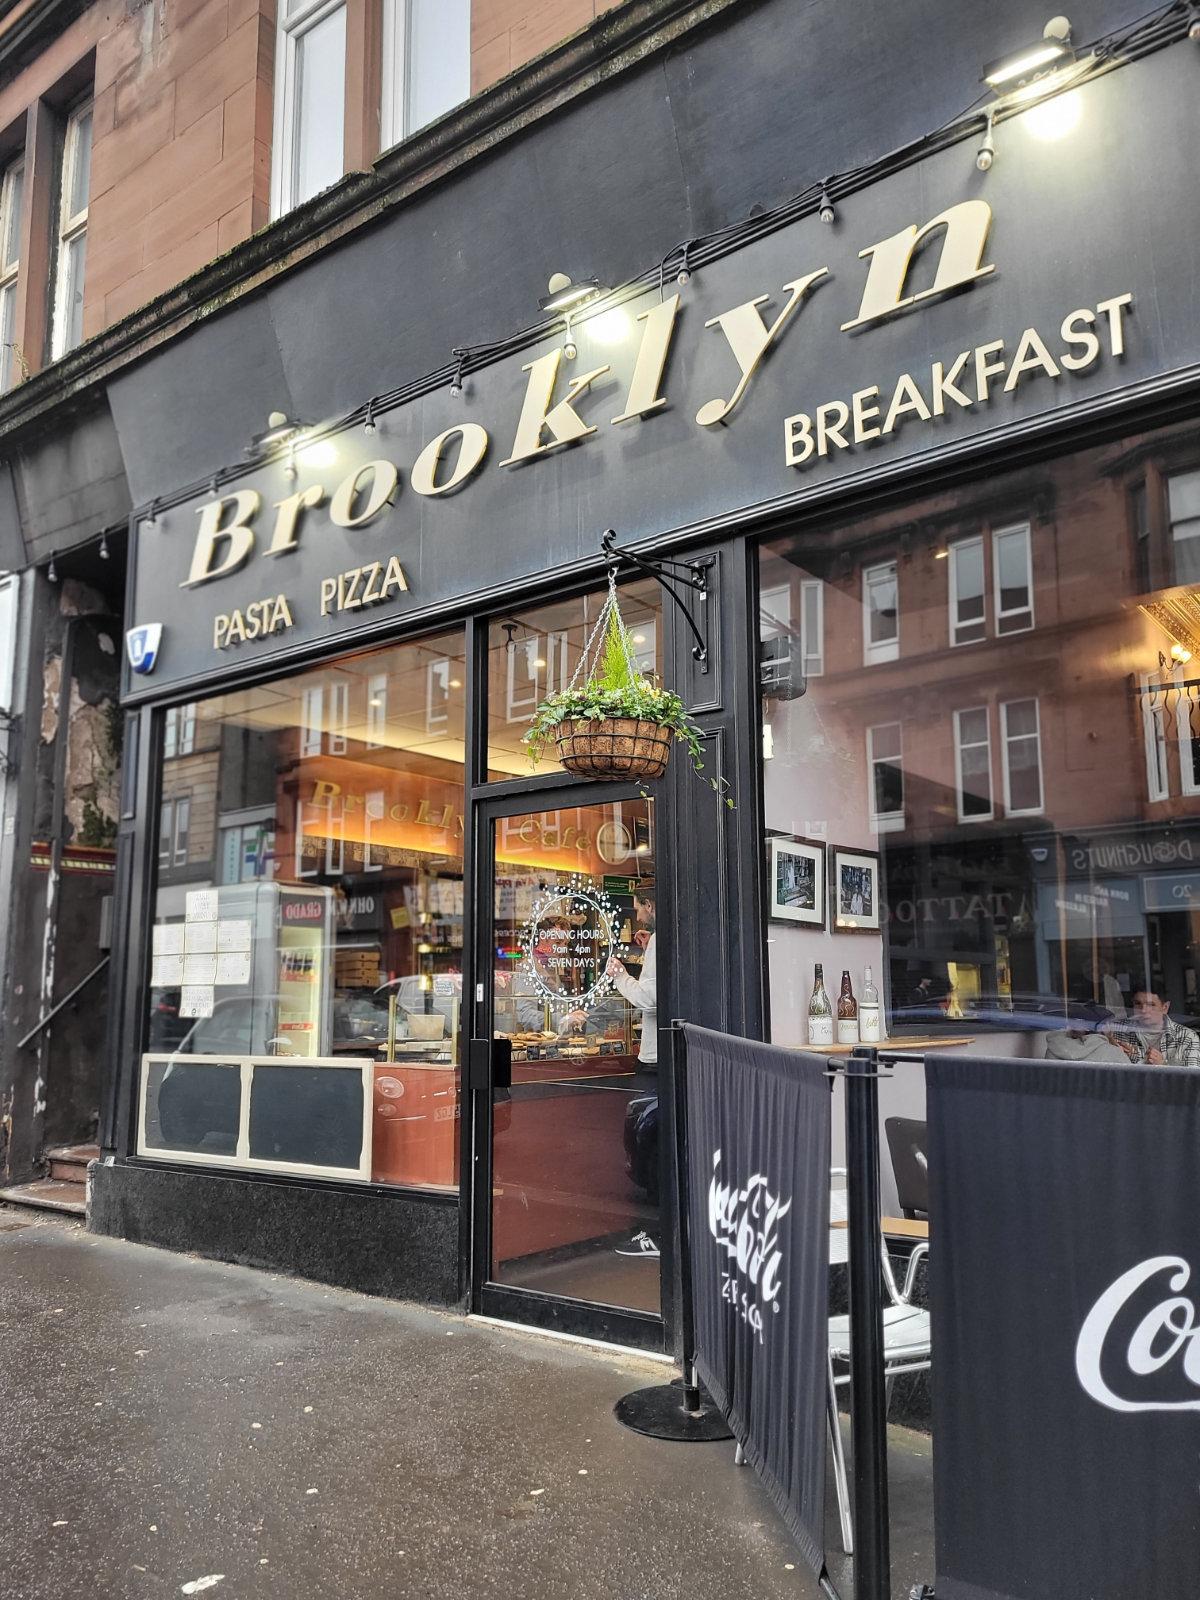 Brooklyn Cafe